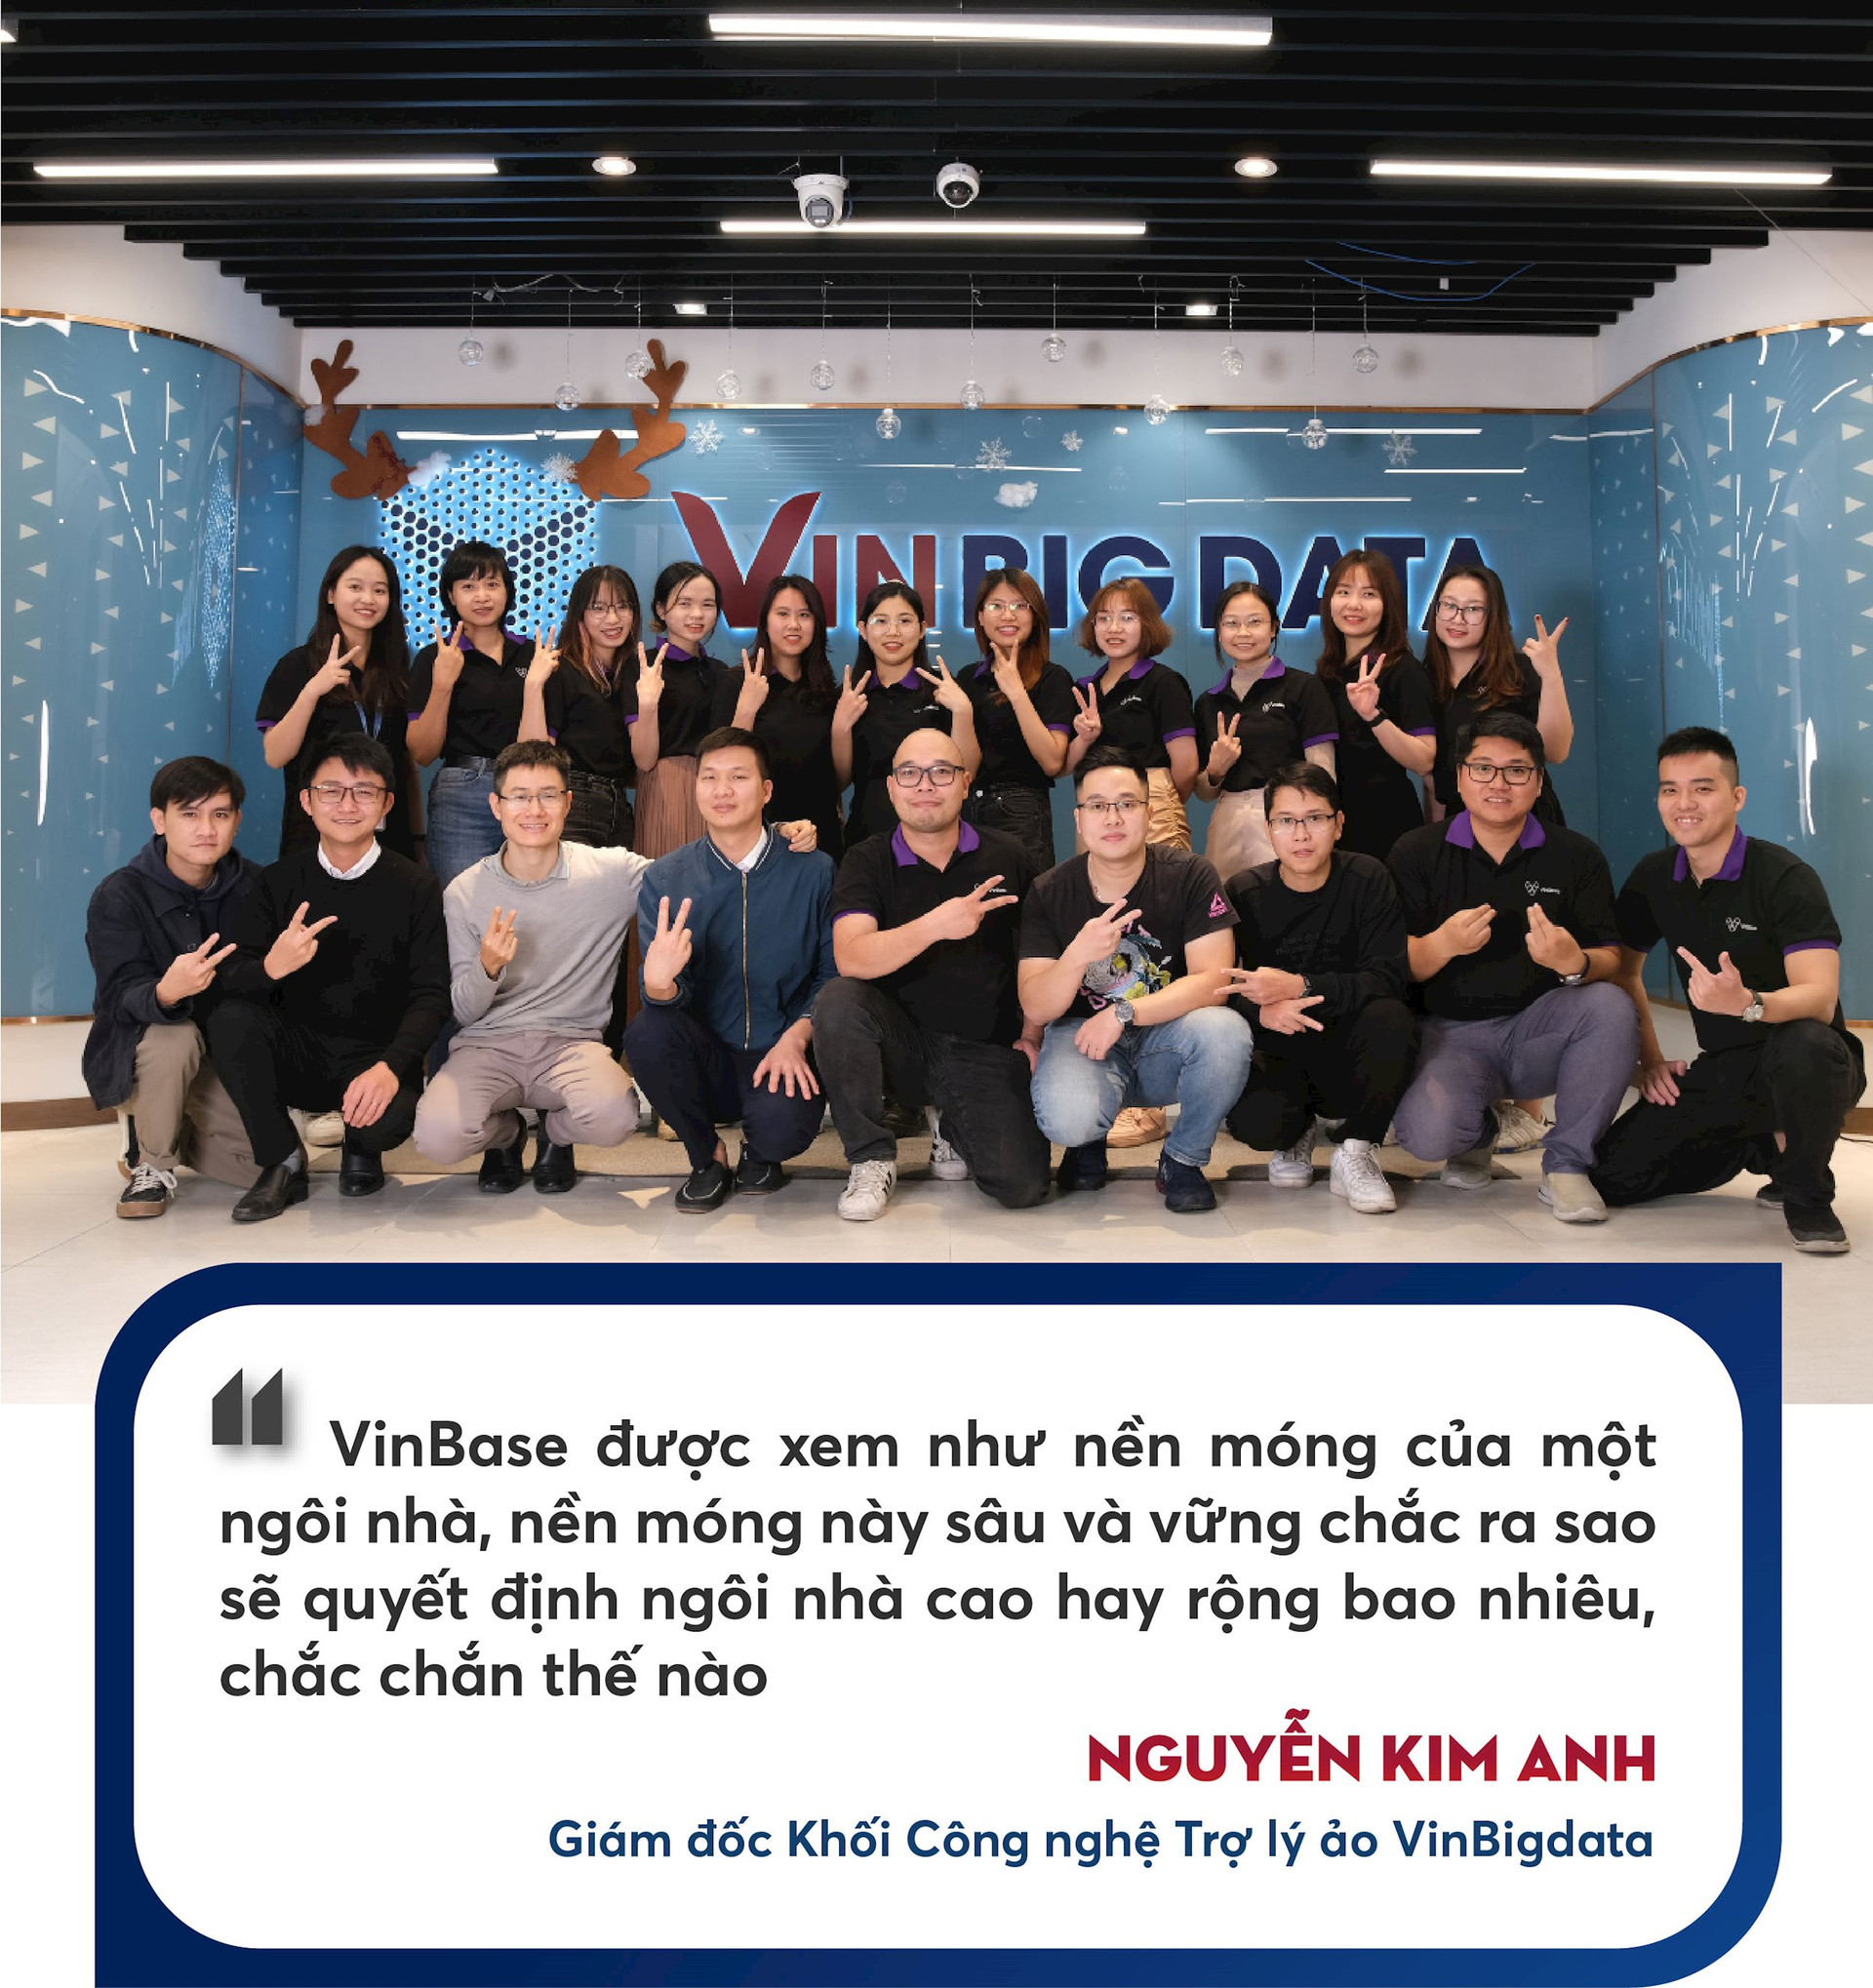 Người nắm giữ “trái tim” của trợ lý ảo ViVi trên xe VinFast: sản phẩm Việt phục vụ người Việt và ước mơ về một “Google Việt Nam” trong lĩnh vực AI - Ảnh 7.